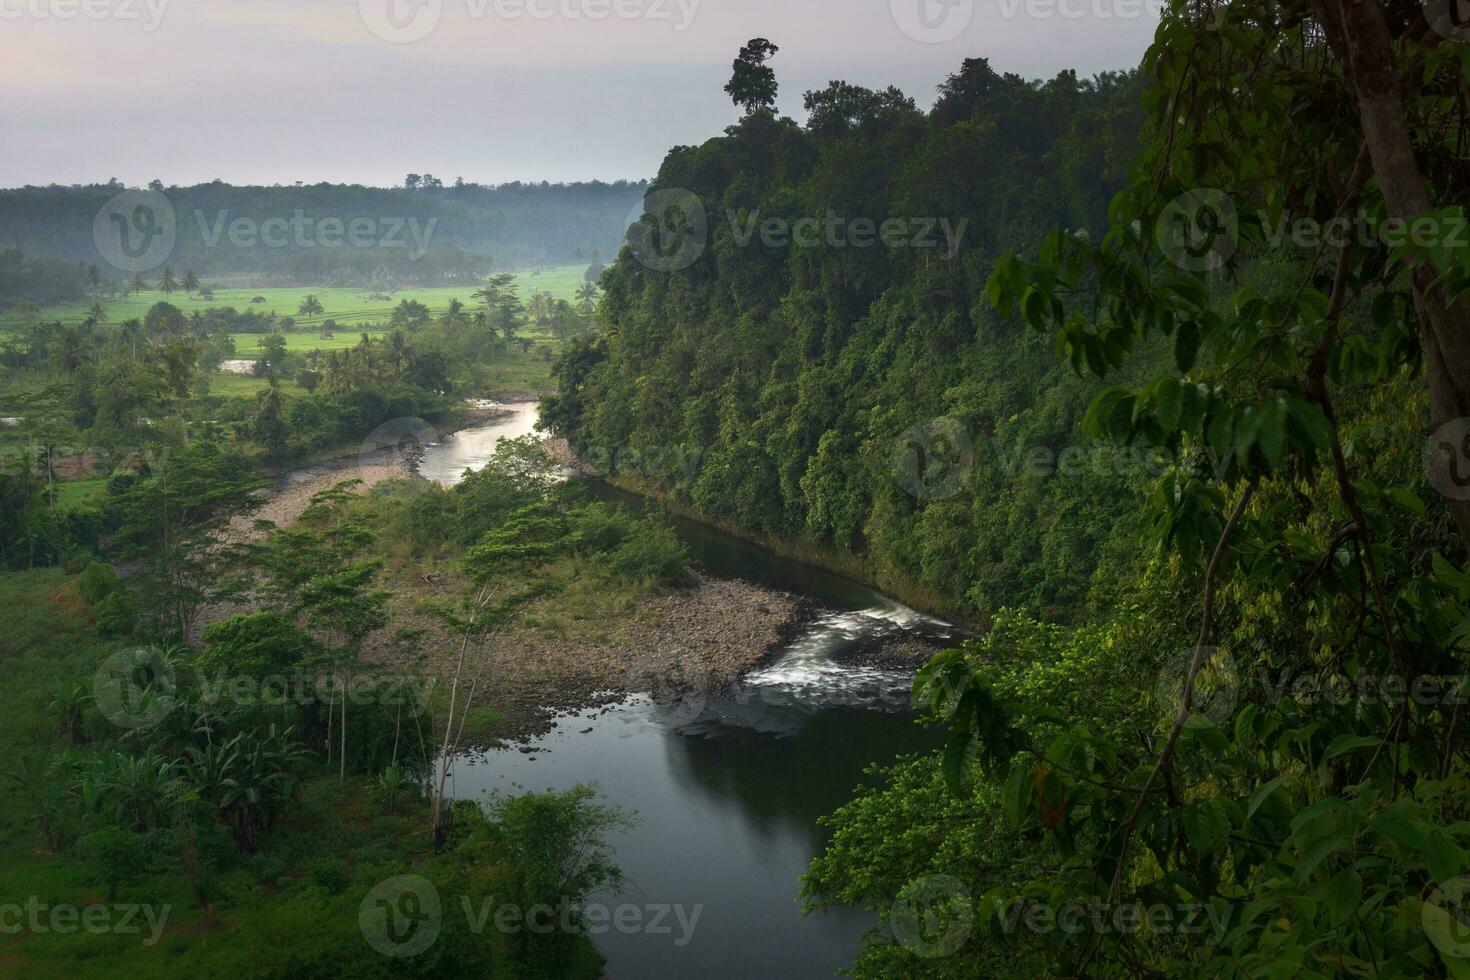 schön Morgen Aussicht Indonesien. Panorama Landschaft Paddy Felder mit Schönheit Farbe und Himmel natürlich Licht foto